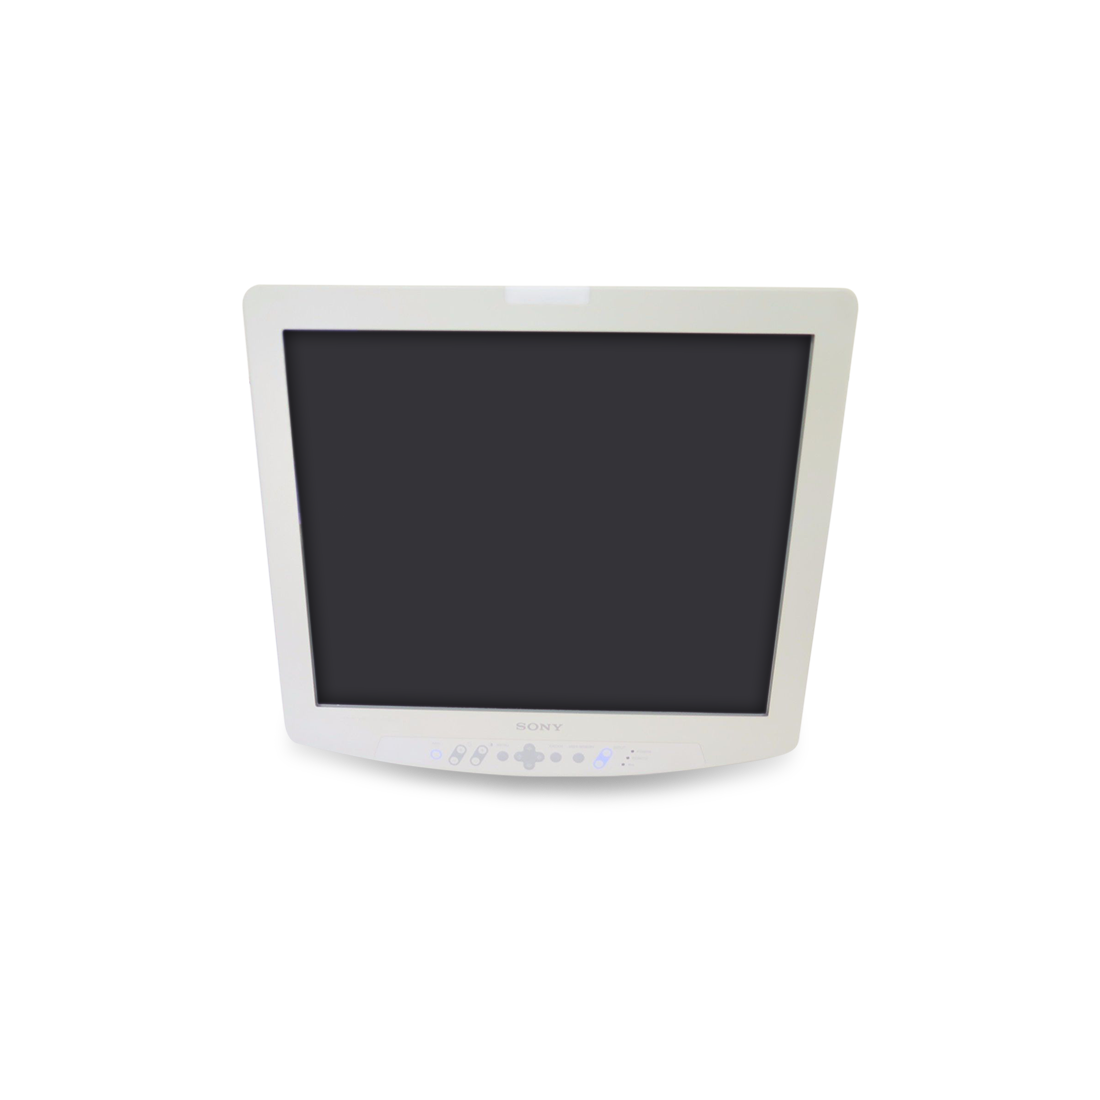 Sony LMD-1950MD Endoscopy Monitor